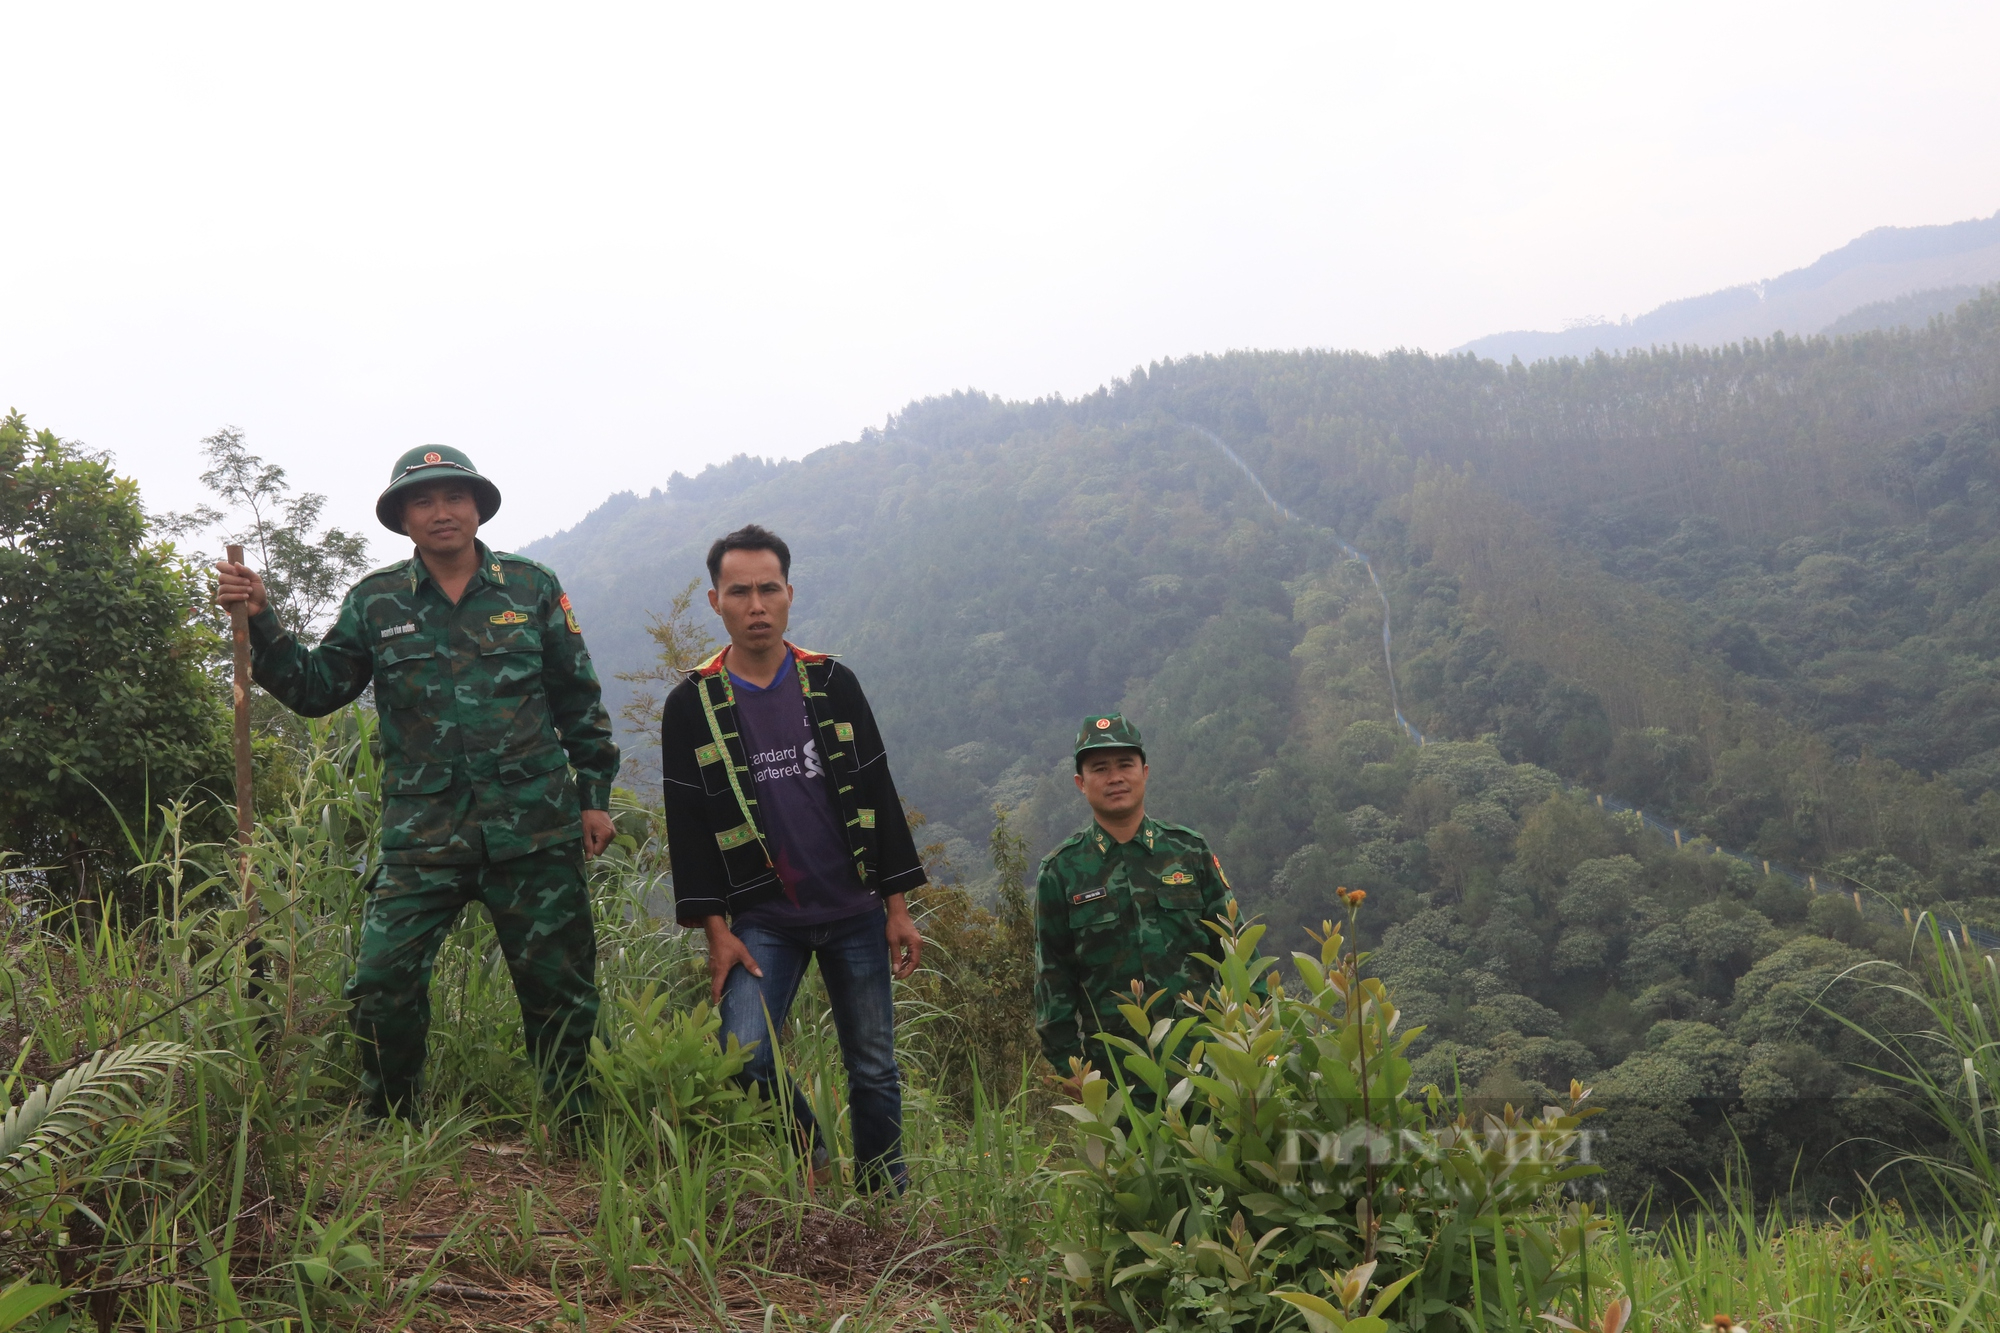 Bí thư tỉnh ủy Lạng Sơn:  Viết thư kêu gọi ủng hộ xây dựng đường tuần tra bảo vệ đường biên mốc giới. - Ảnh 3.